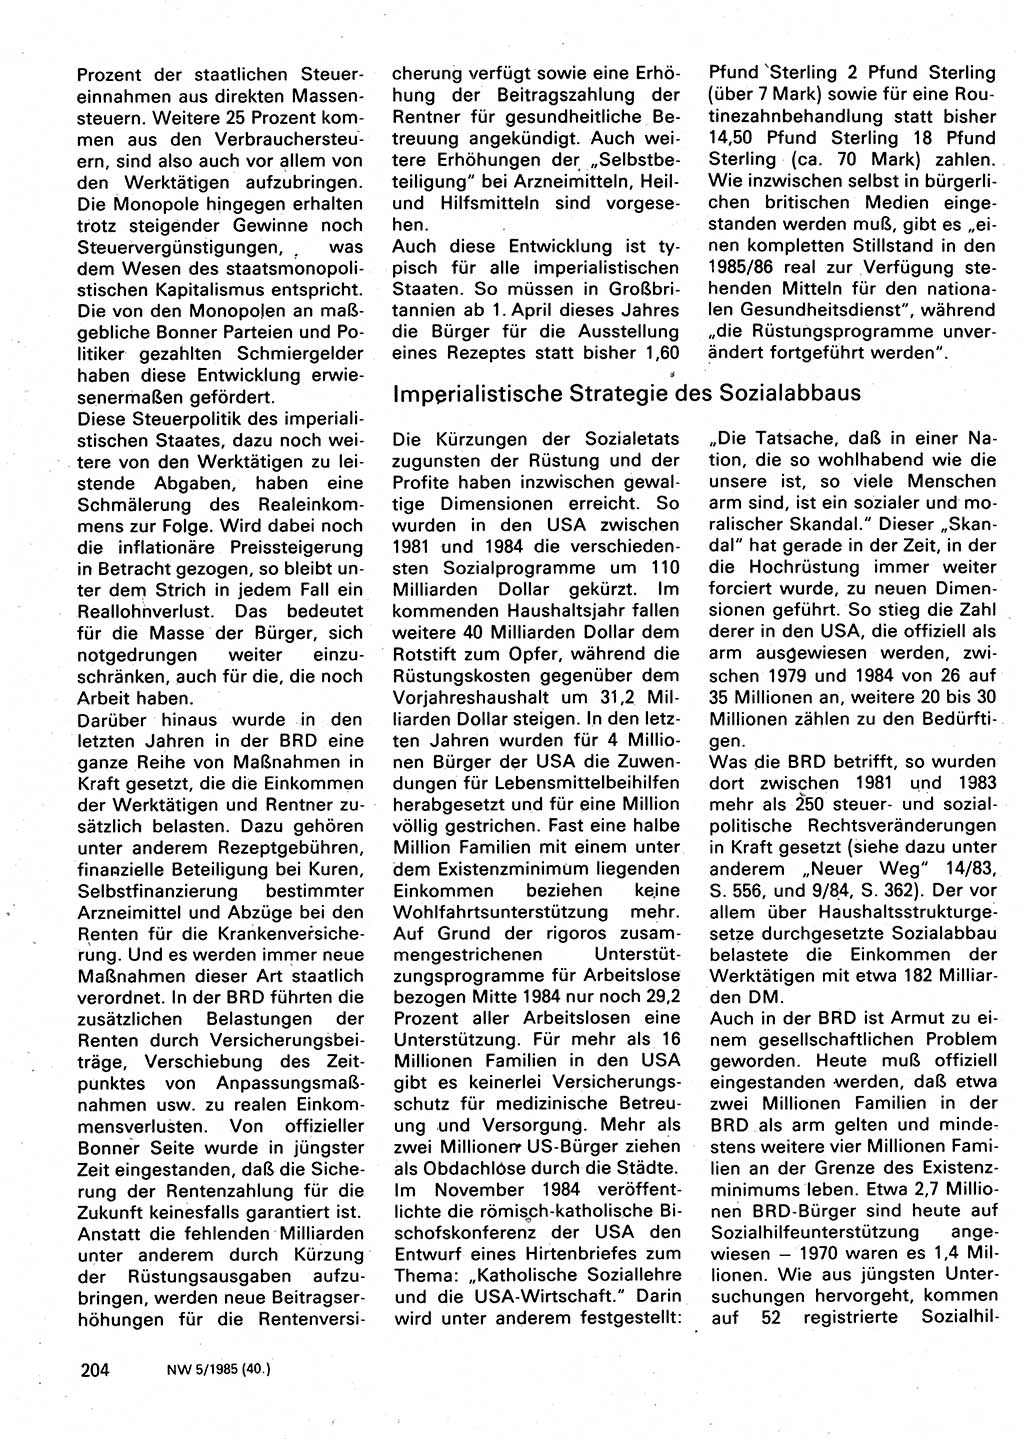 Neuer Weg (NW), Organ des Zentralkomitees (ZK) der SED (Sozialistische Einheitspartei Deutschlands) für Fragen des Parteilebens, 40. Jahrgang [Deutsche Demokratische Republik (DDR)] 1985, Seite 204 (NW ZK SED DDR 1985, S. 204)